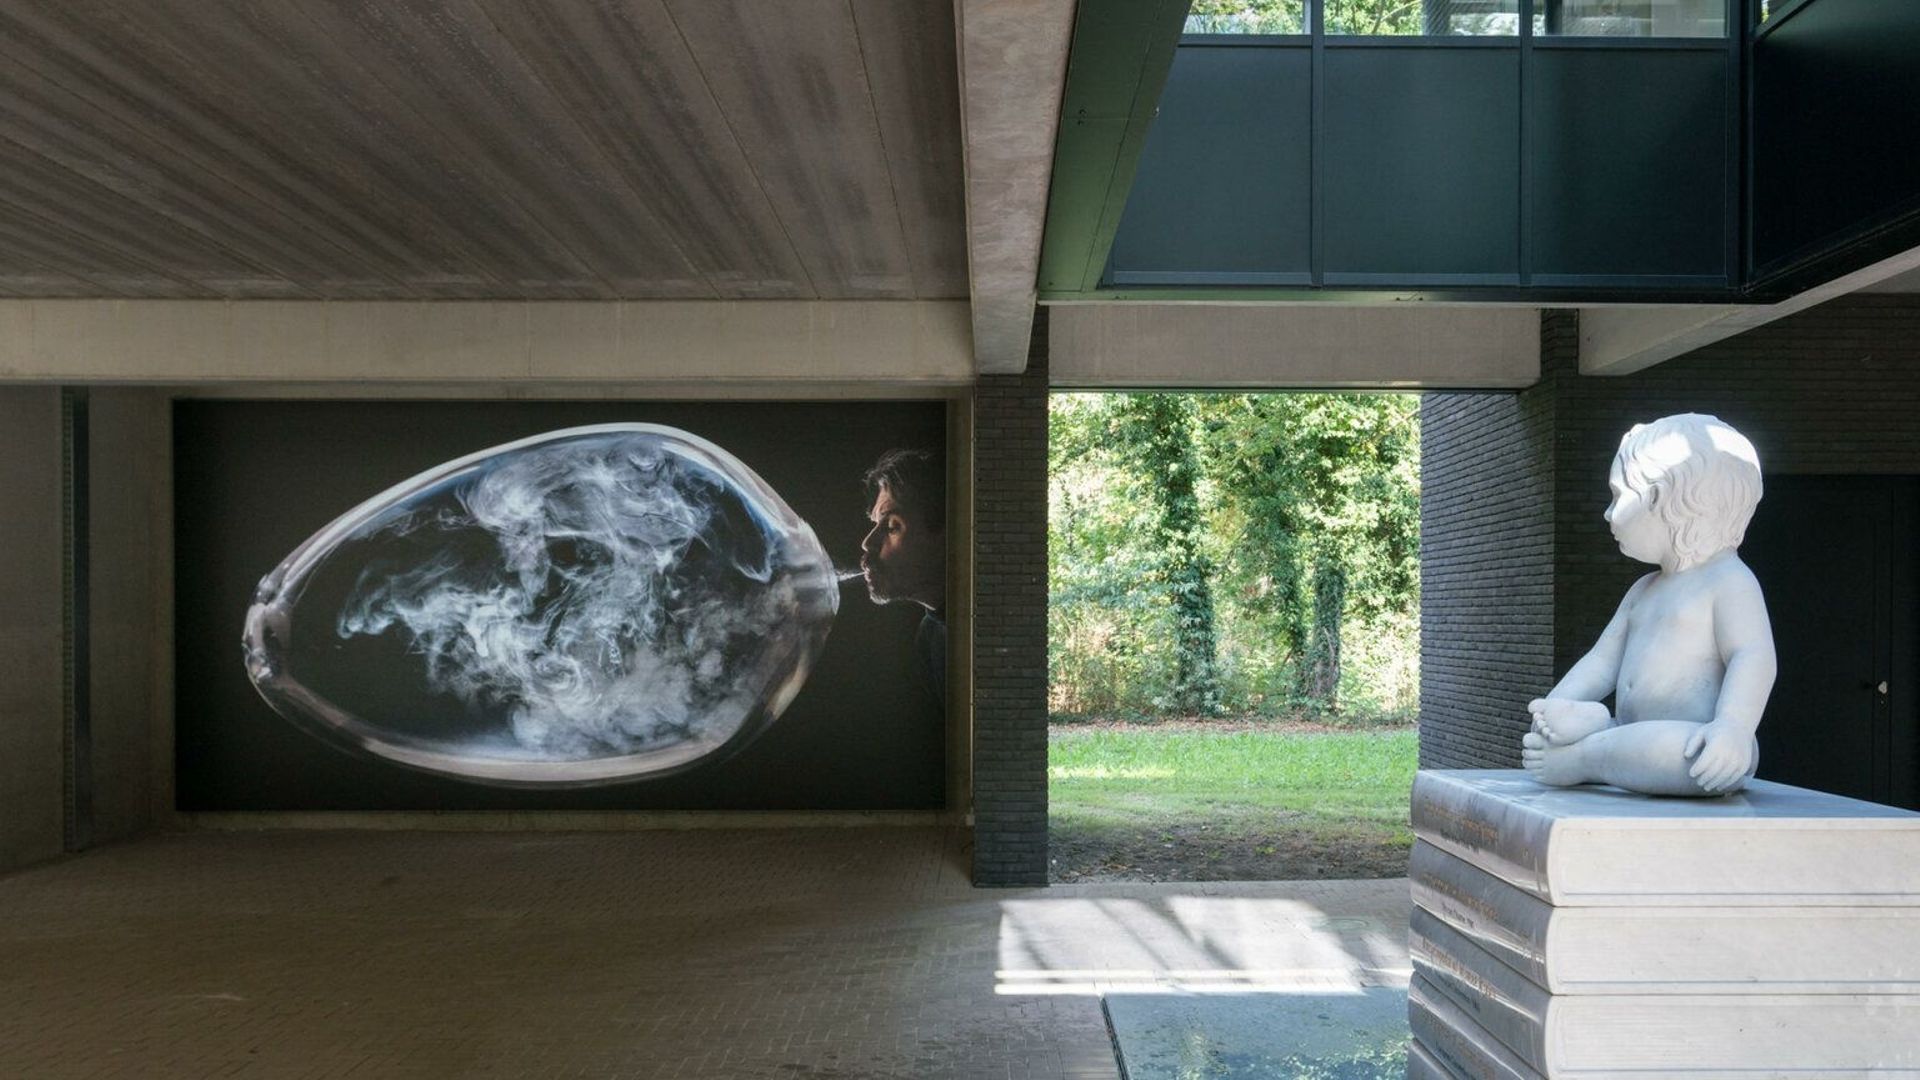 Photographie de l’espace d’exposition "Labiomista" situé à Genk. Projet mené conjointement par l’artiste Koen Vanmechelen et la ville de Genk.